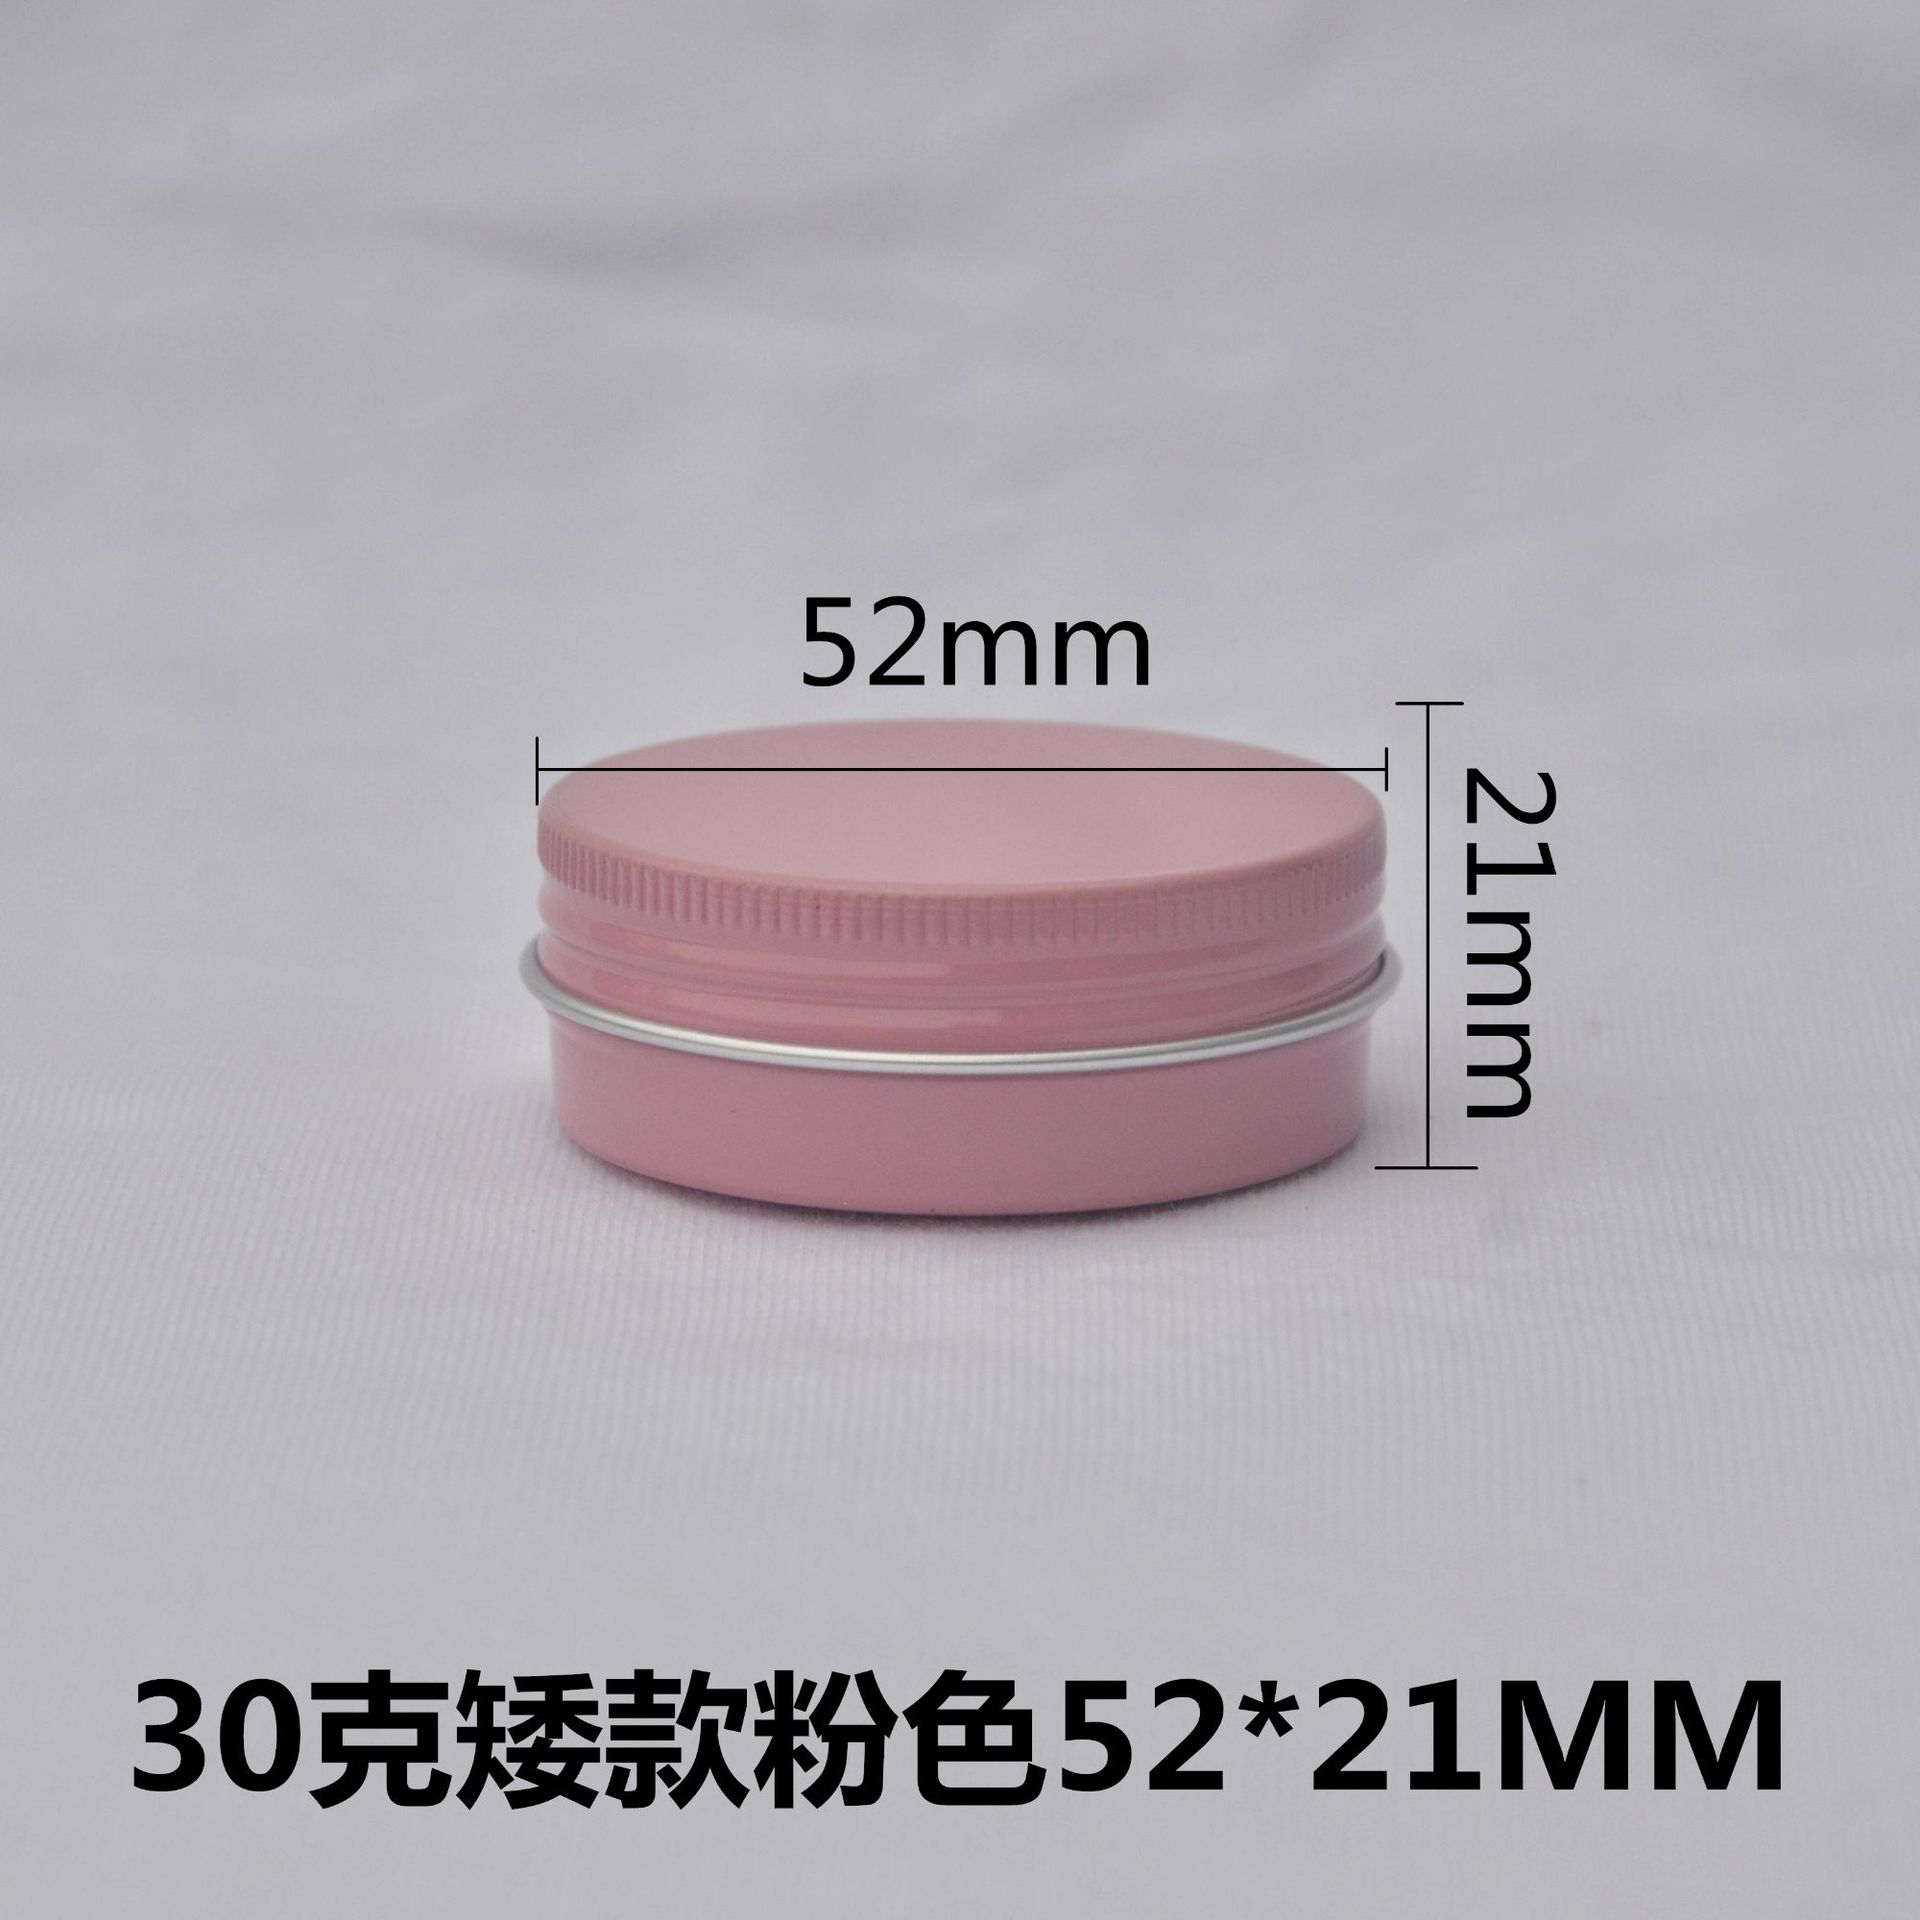 矮款30g克ML52*21mm粉色小铝盒 化妆品 紫草膏 DIY手工包装金属盒